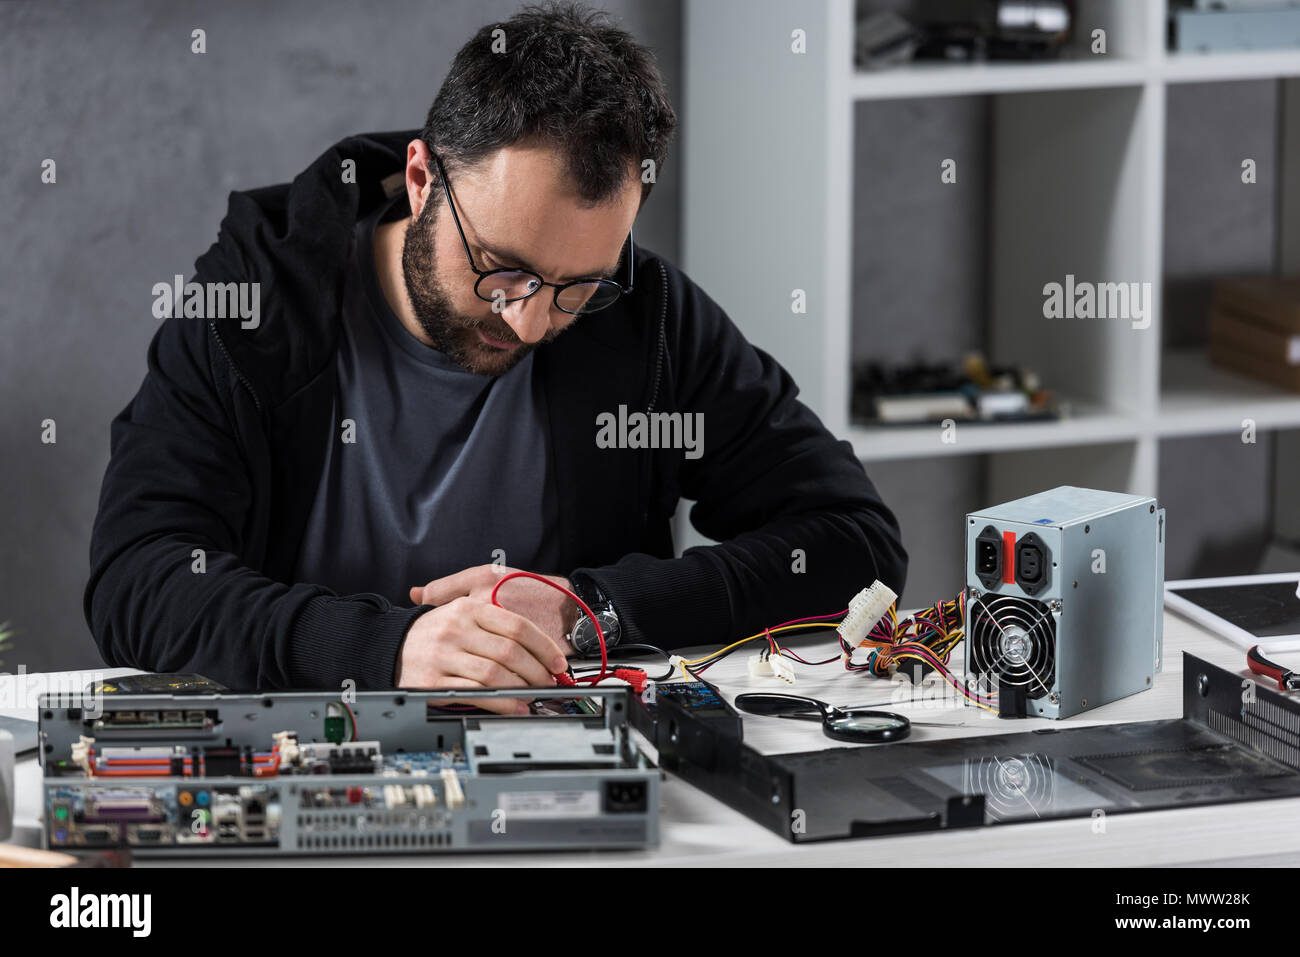 man using multimeter while fixing broken pc Stock Photo